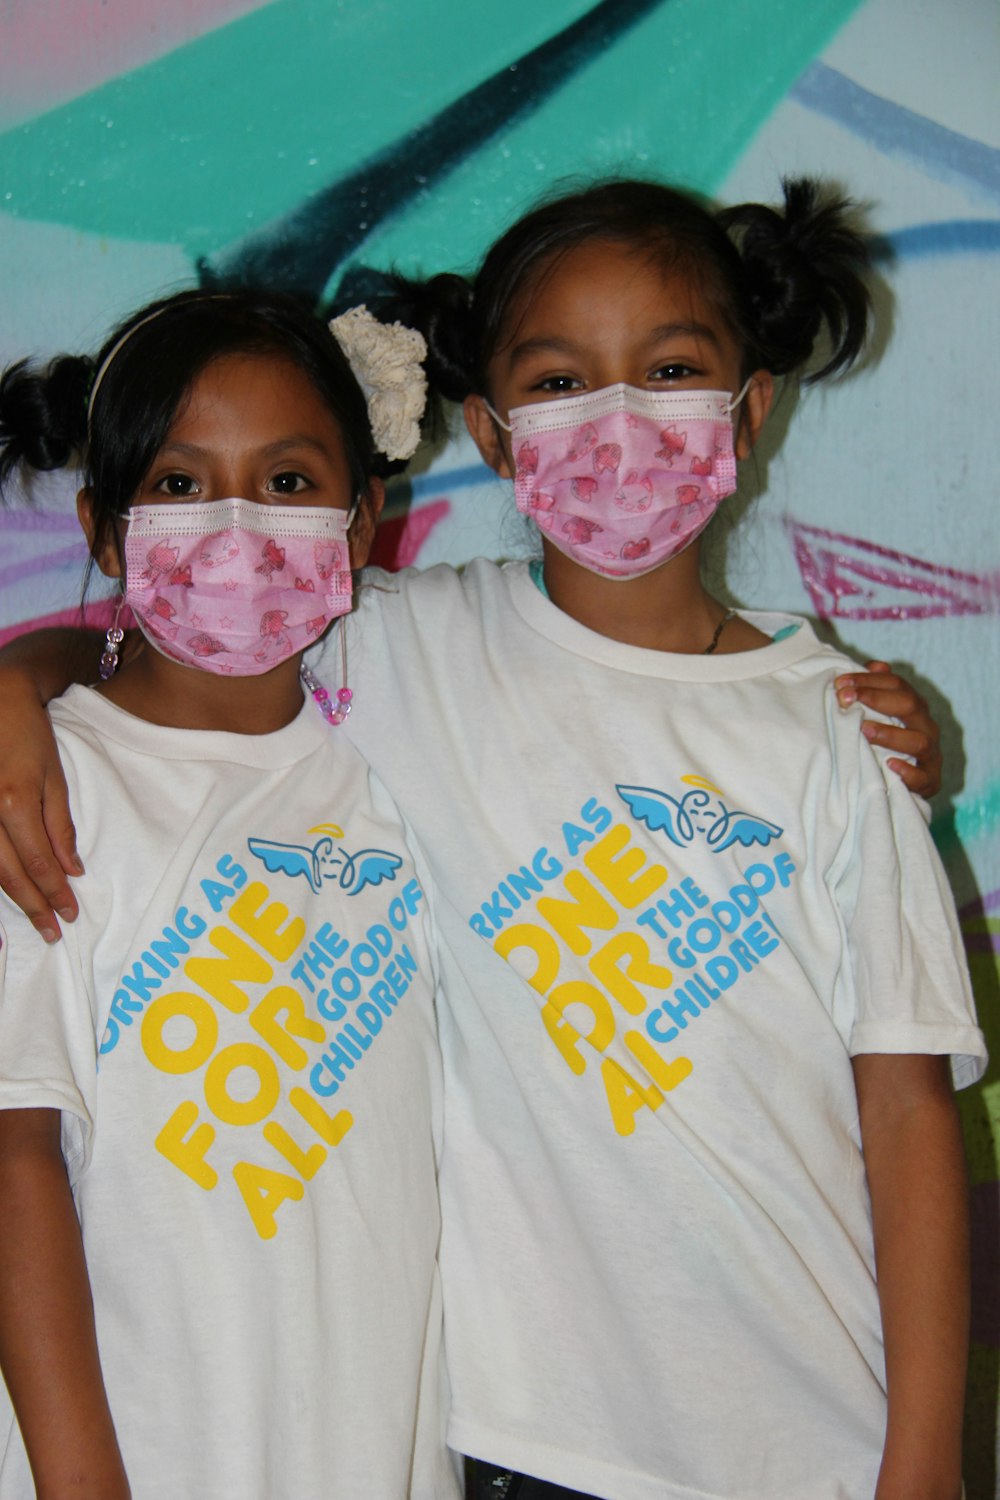 Zwei junge Mädchen mit Gesichtsmasken vor einer Graffiti-Wand